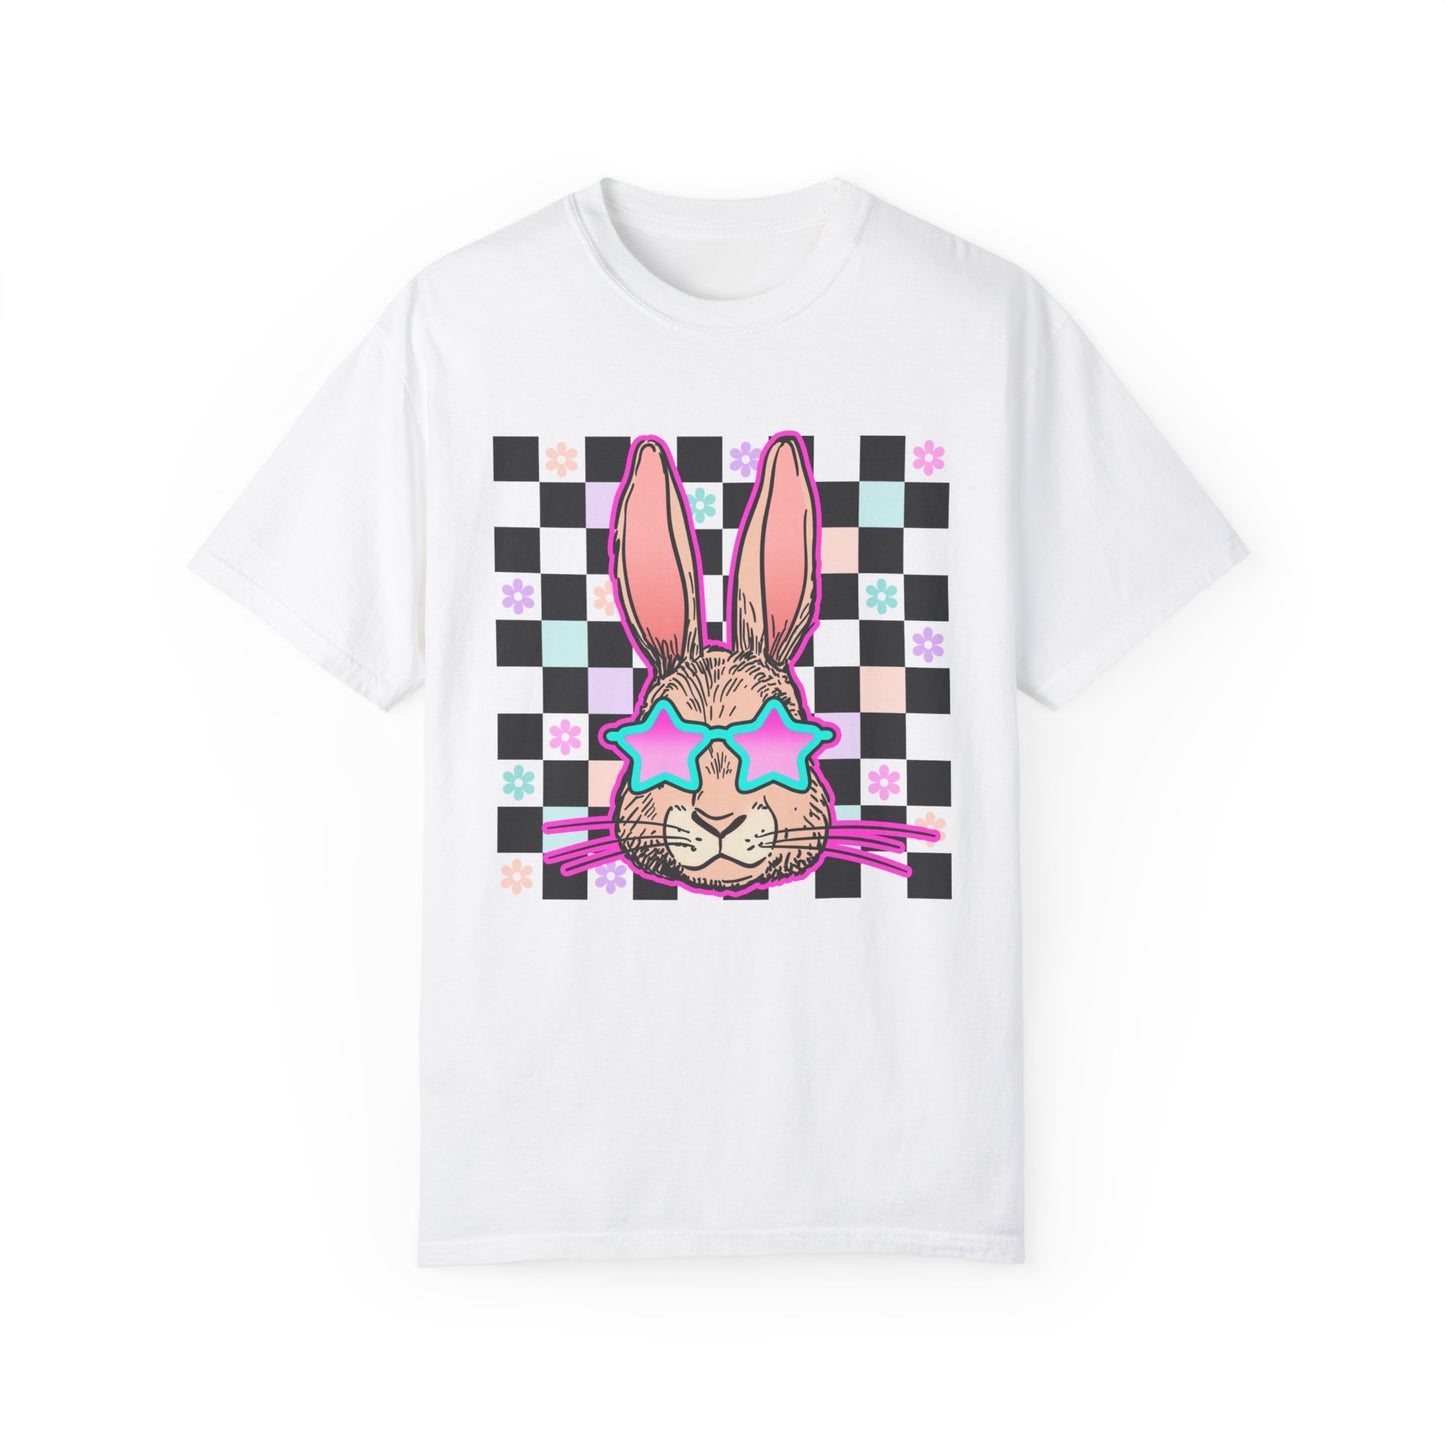 Groovy Easter Bunny Shirt